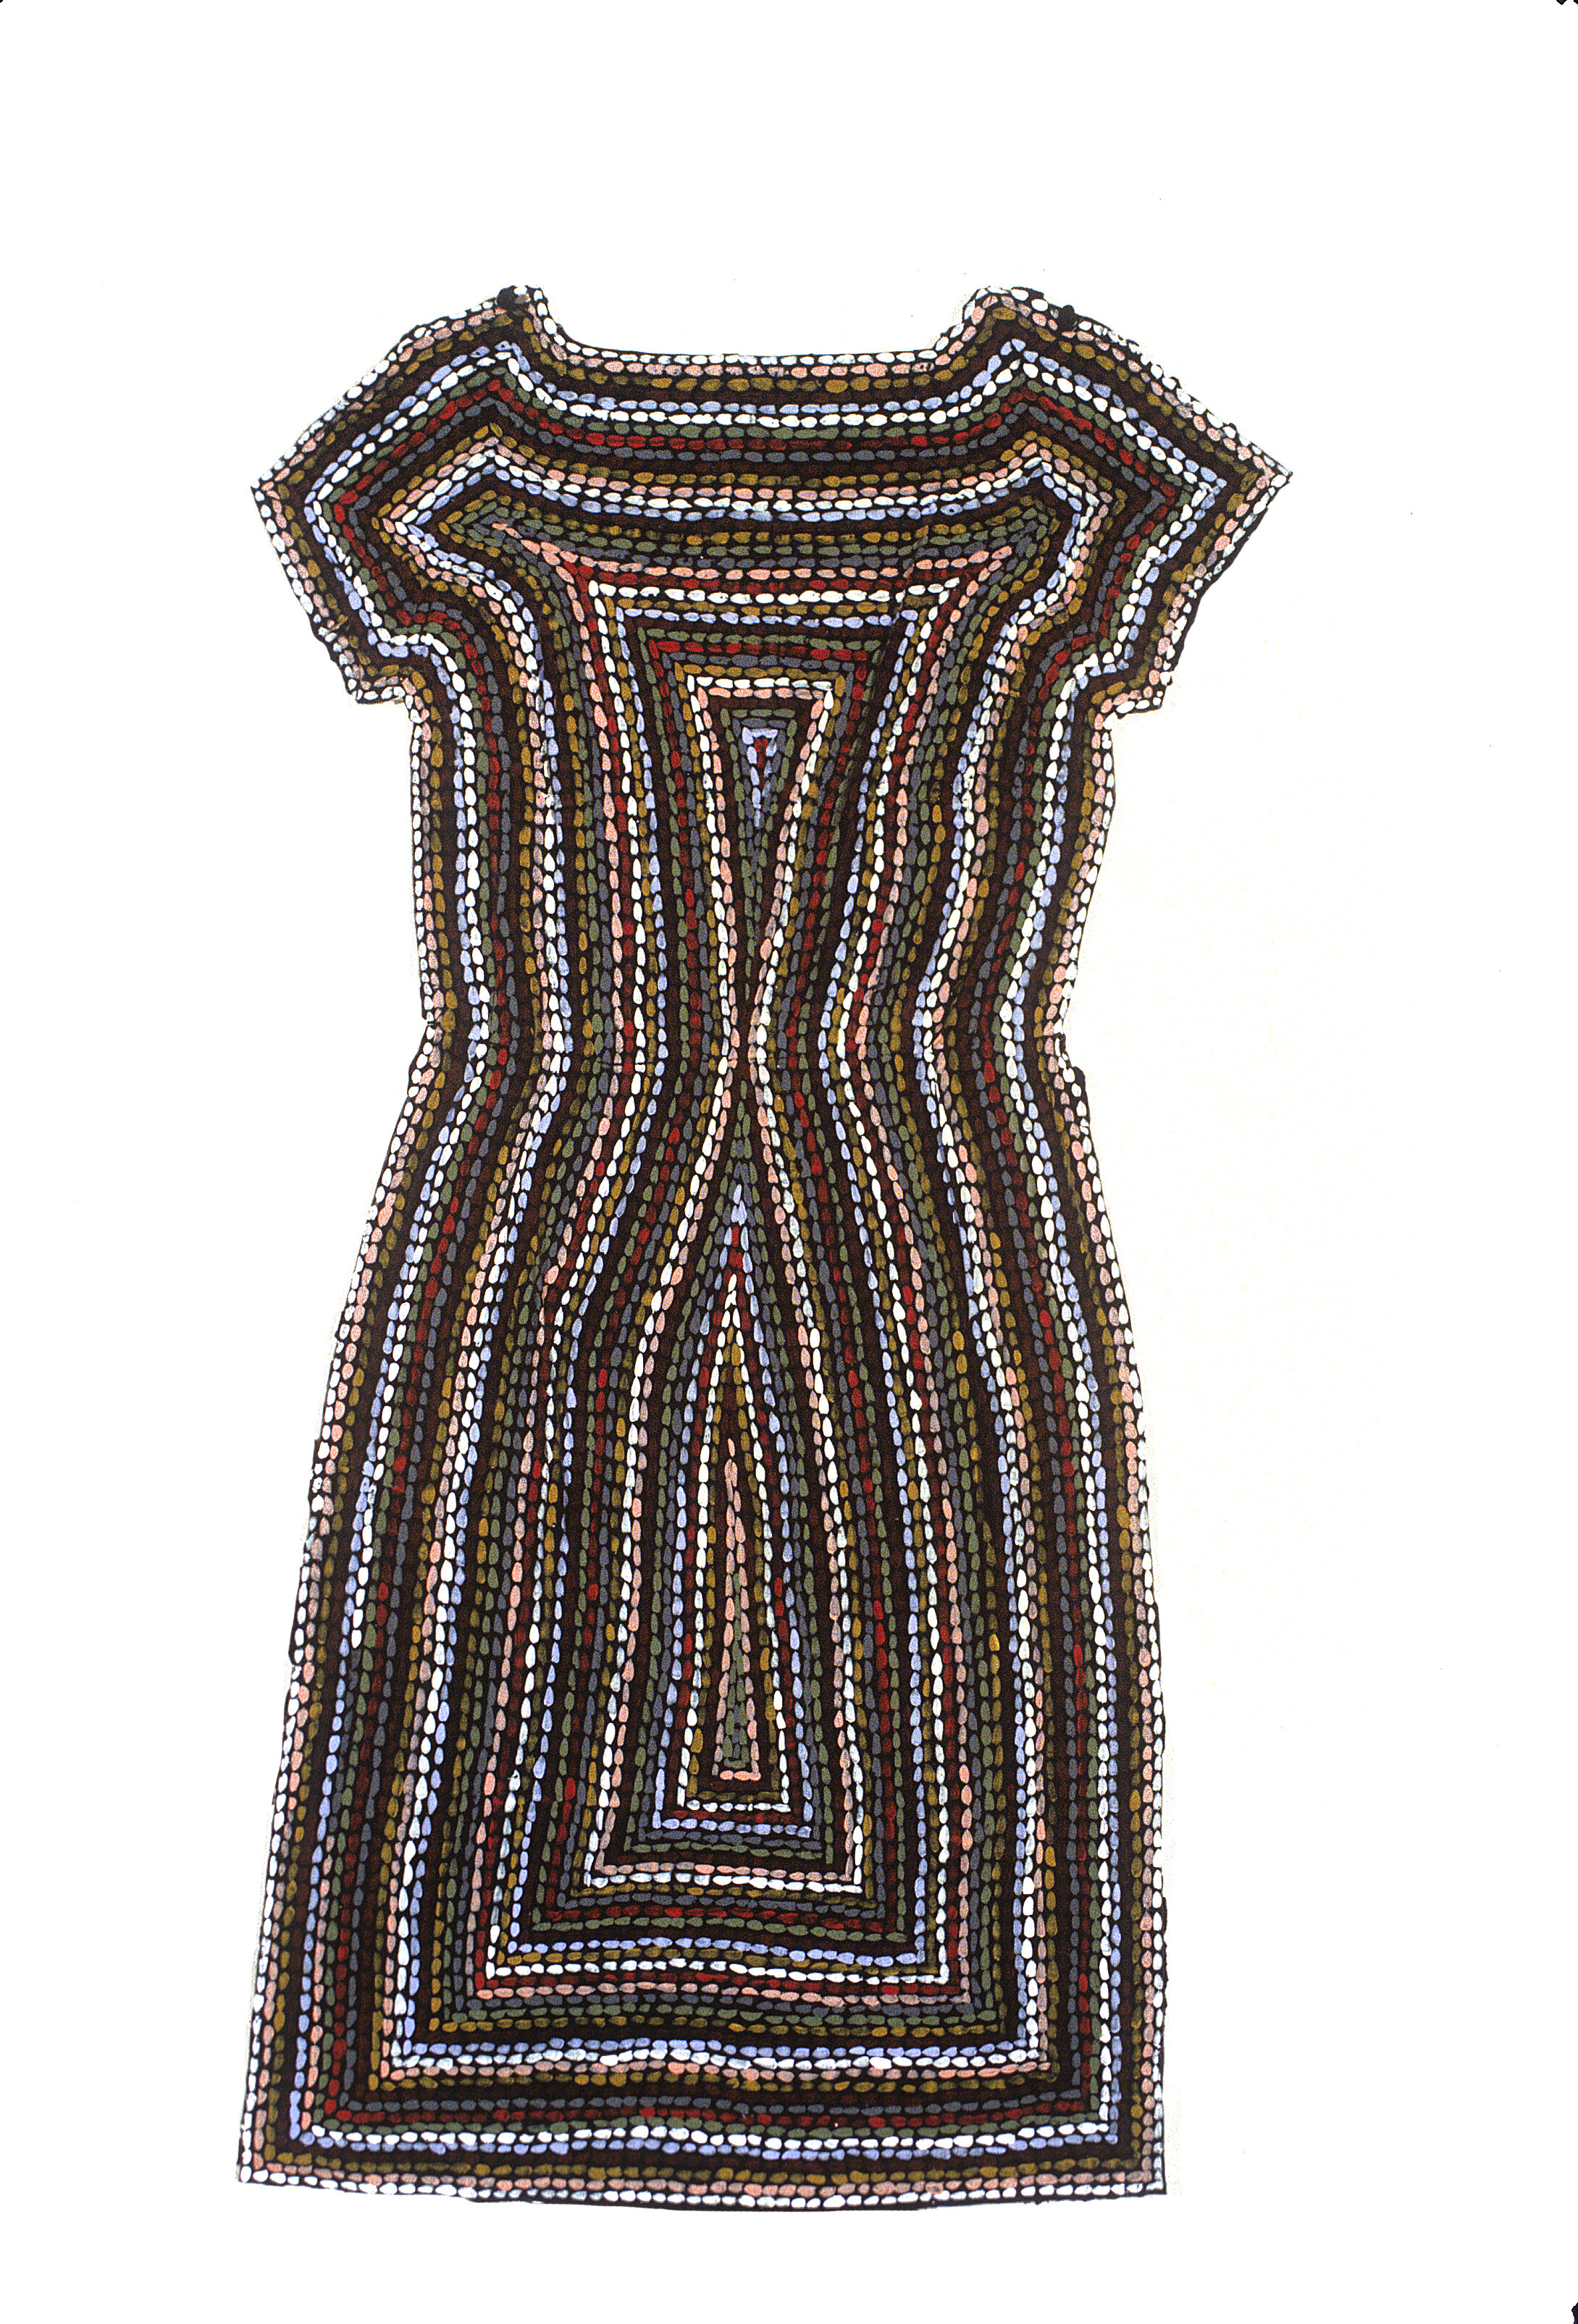   Rug Dress , 1978, dress, gesso, latex enamel, acrylic   